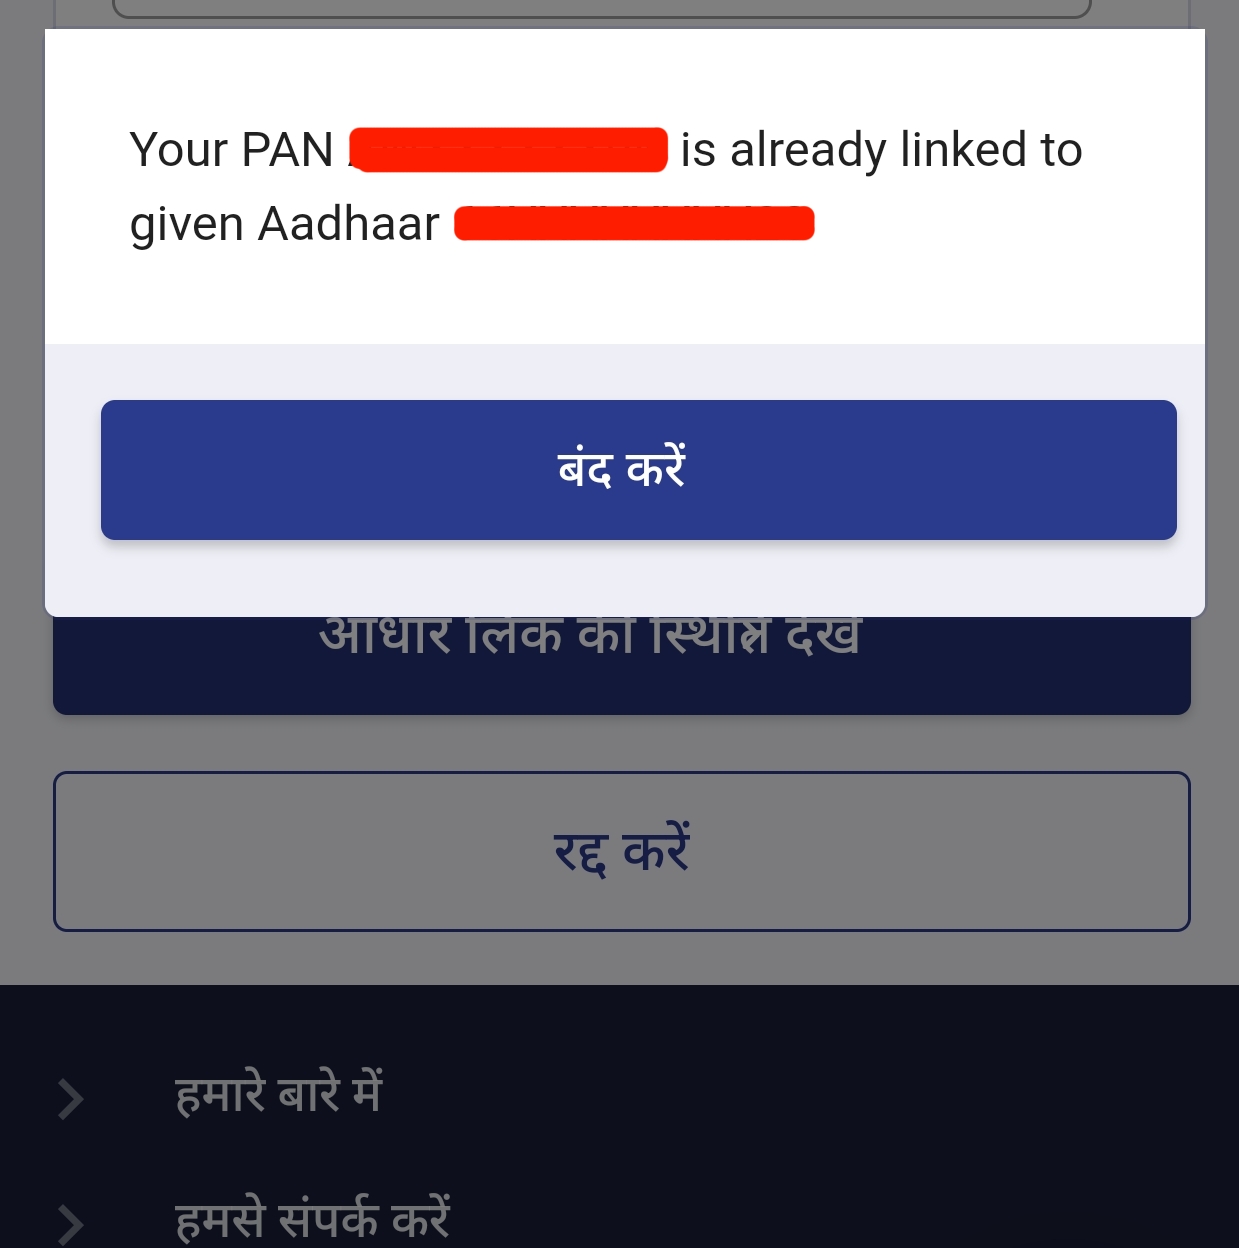 Pan Aadhar Link Status